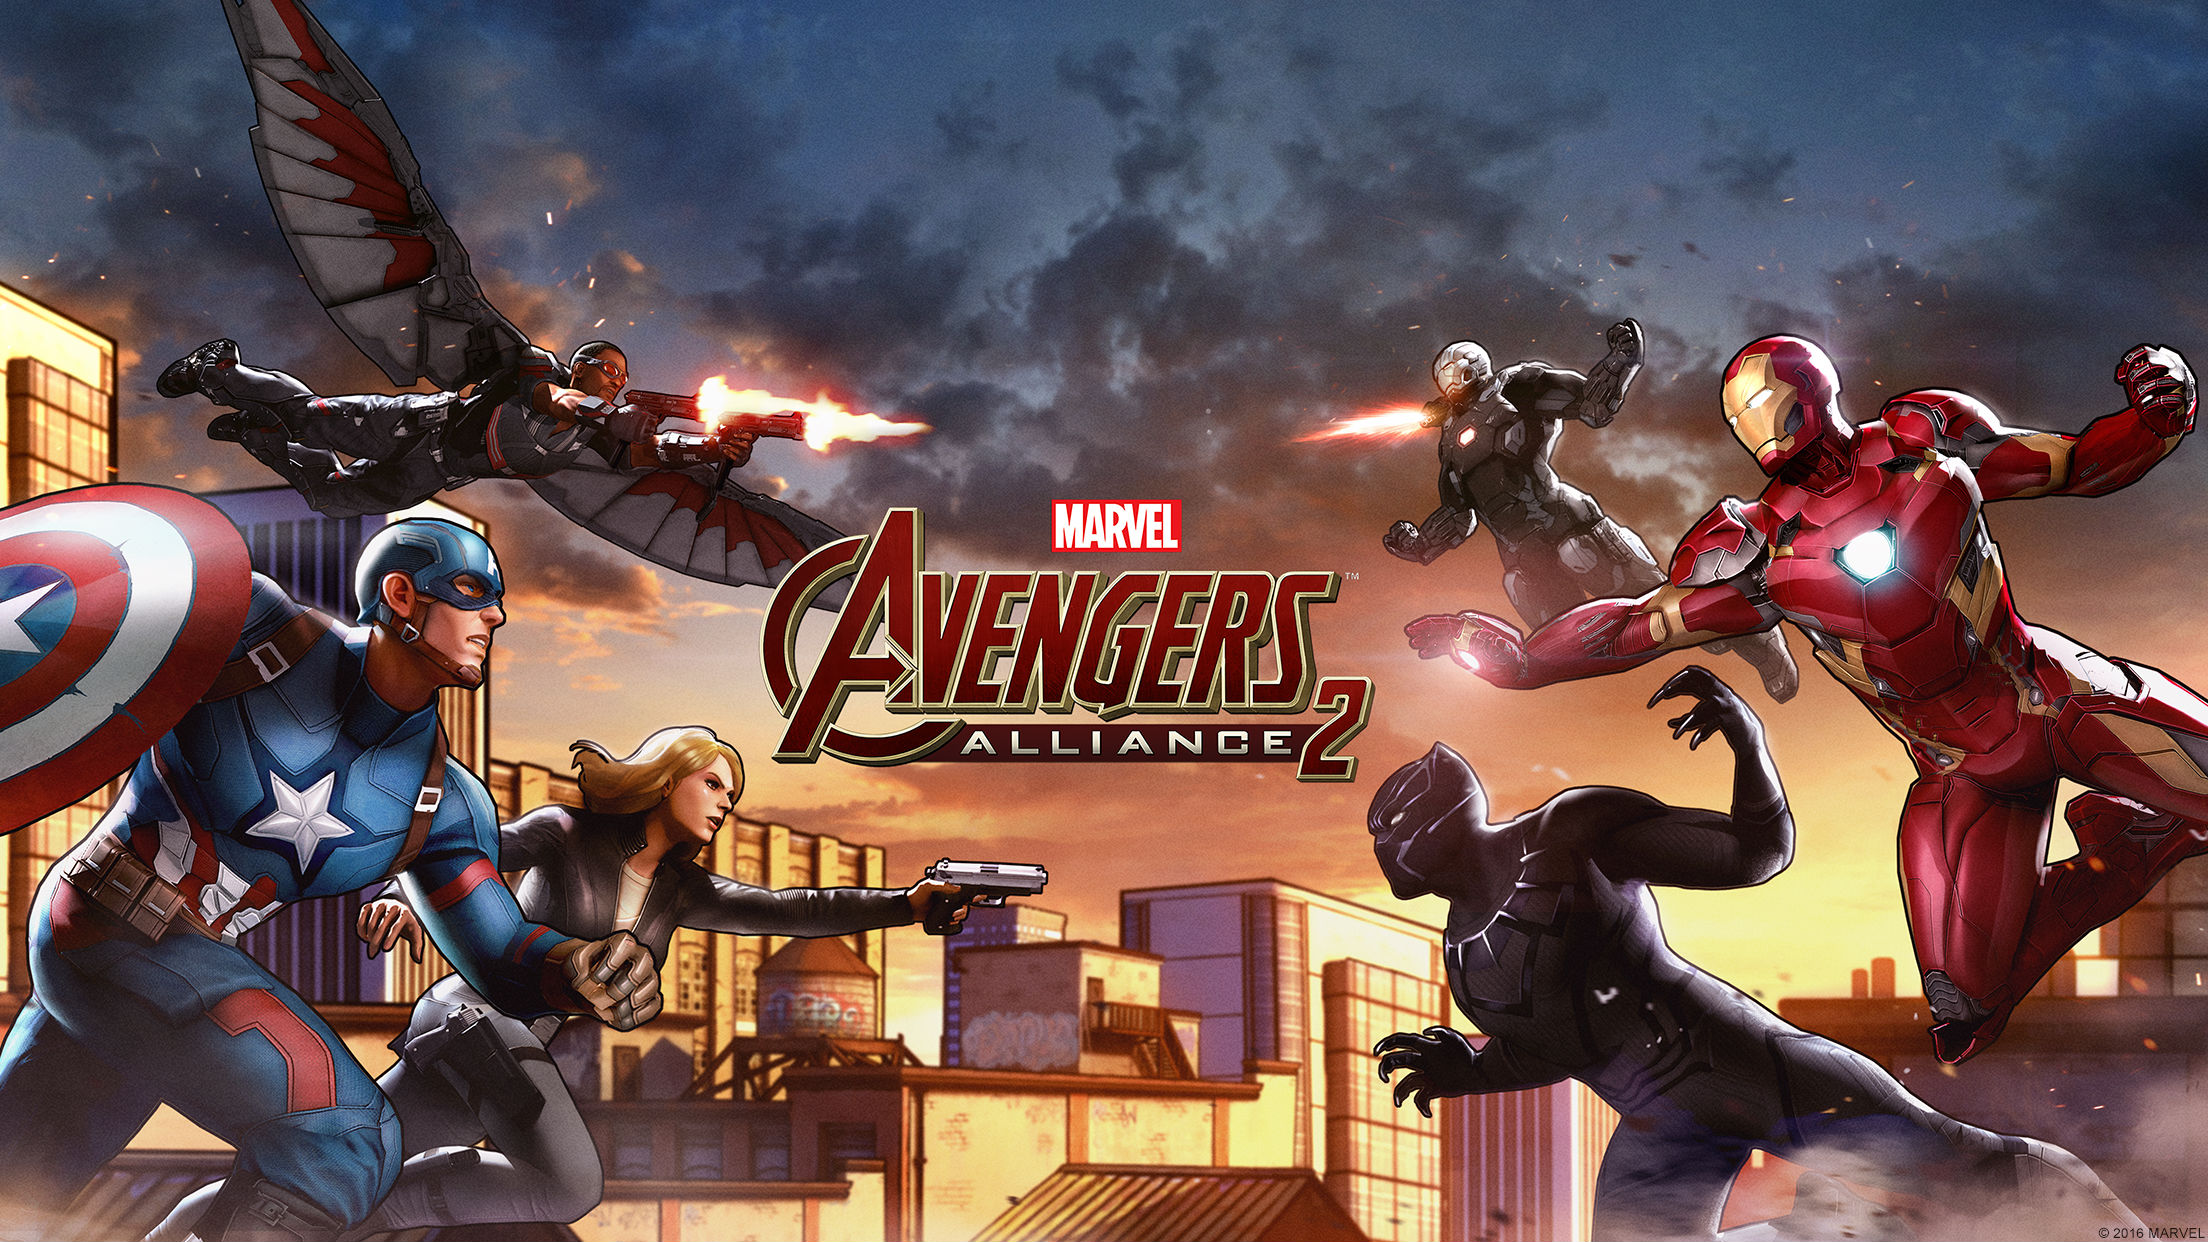 Captain America: Civil War invades Marvel: Avengers Alliance 2